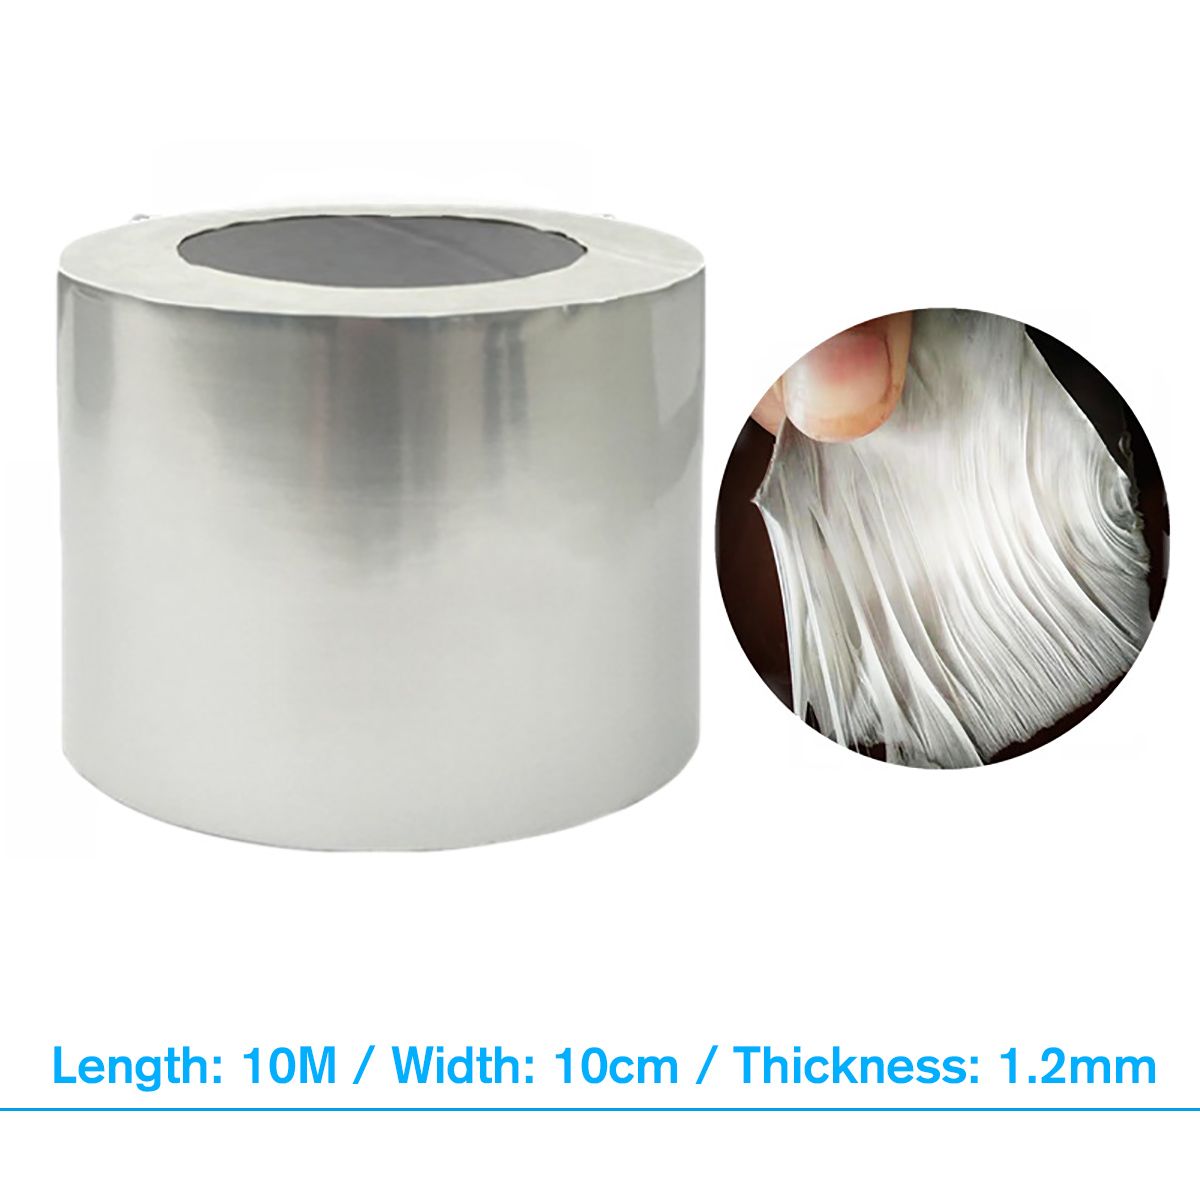 Aluminum-Foil-Butyl-Rubber-Tape-Self-Adhesive-Waterproof-Roof-Pipe-Marine-Repair-1592375